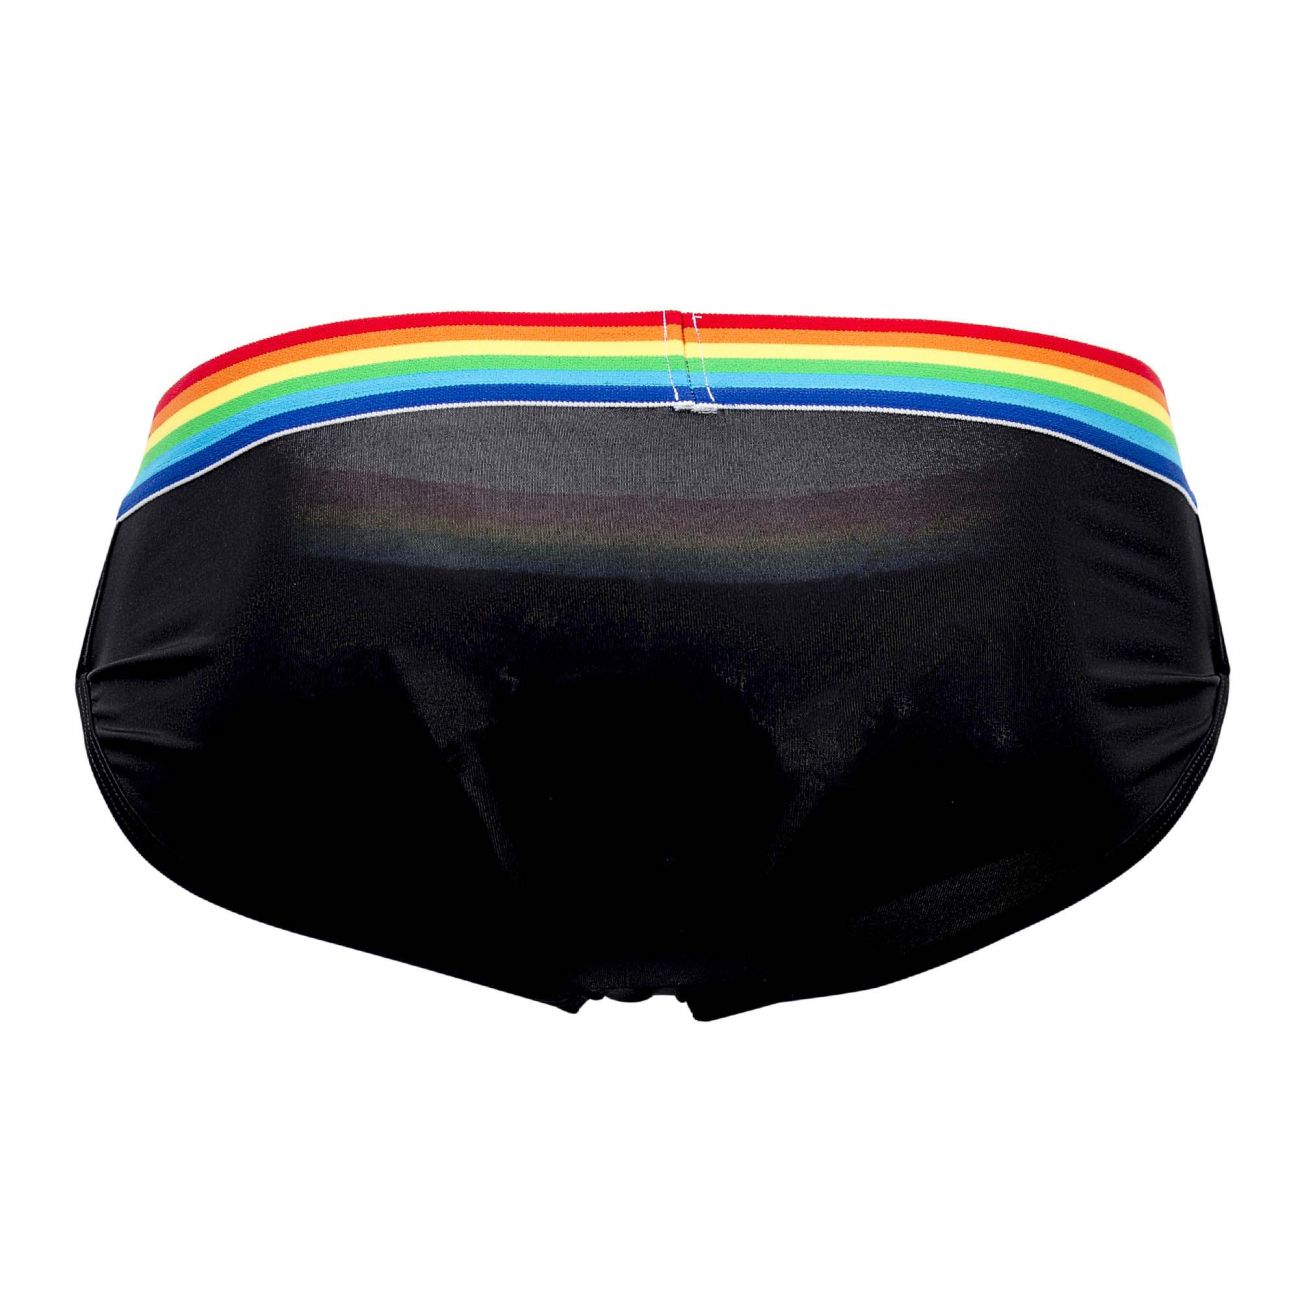 CandyMan 99449 Rainbow Pride Briefs Black